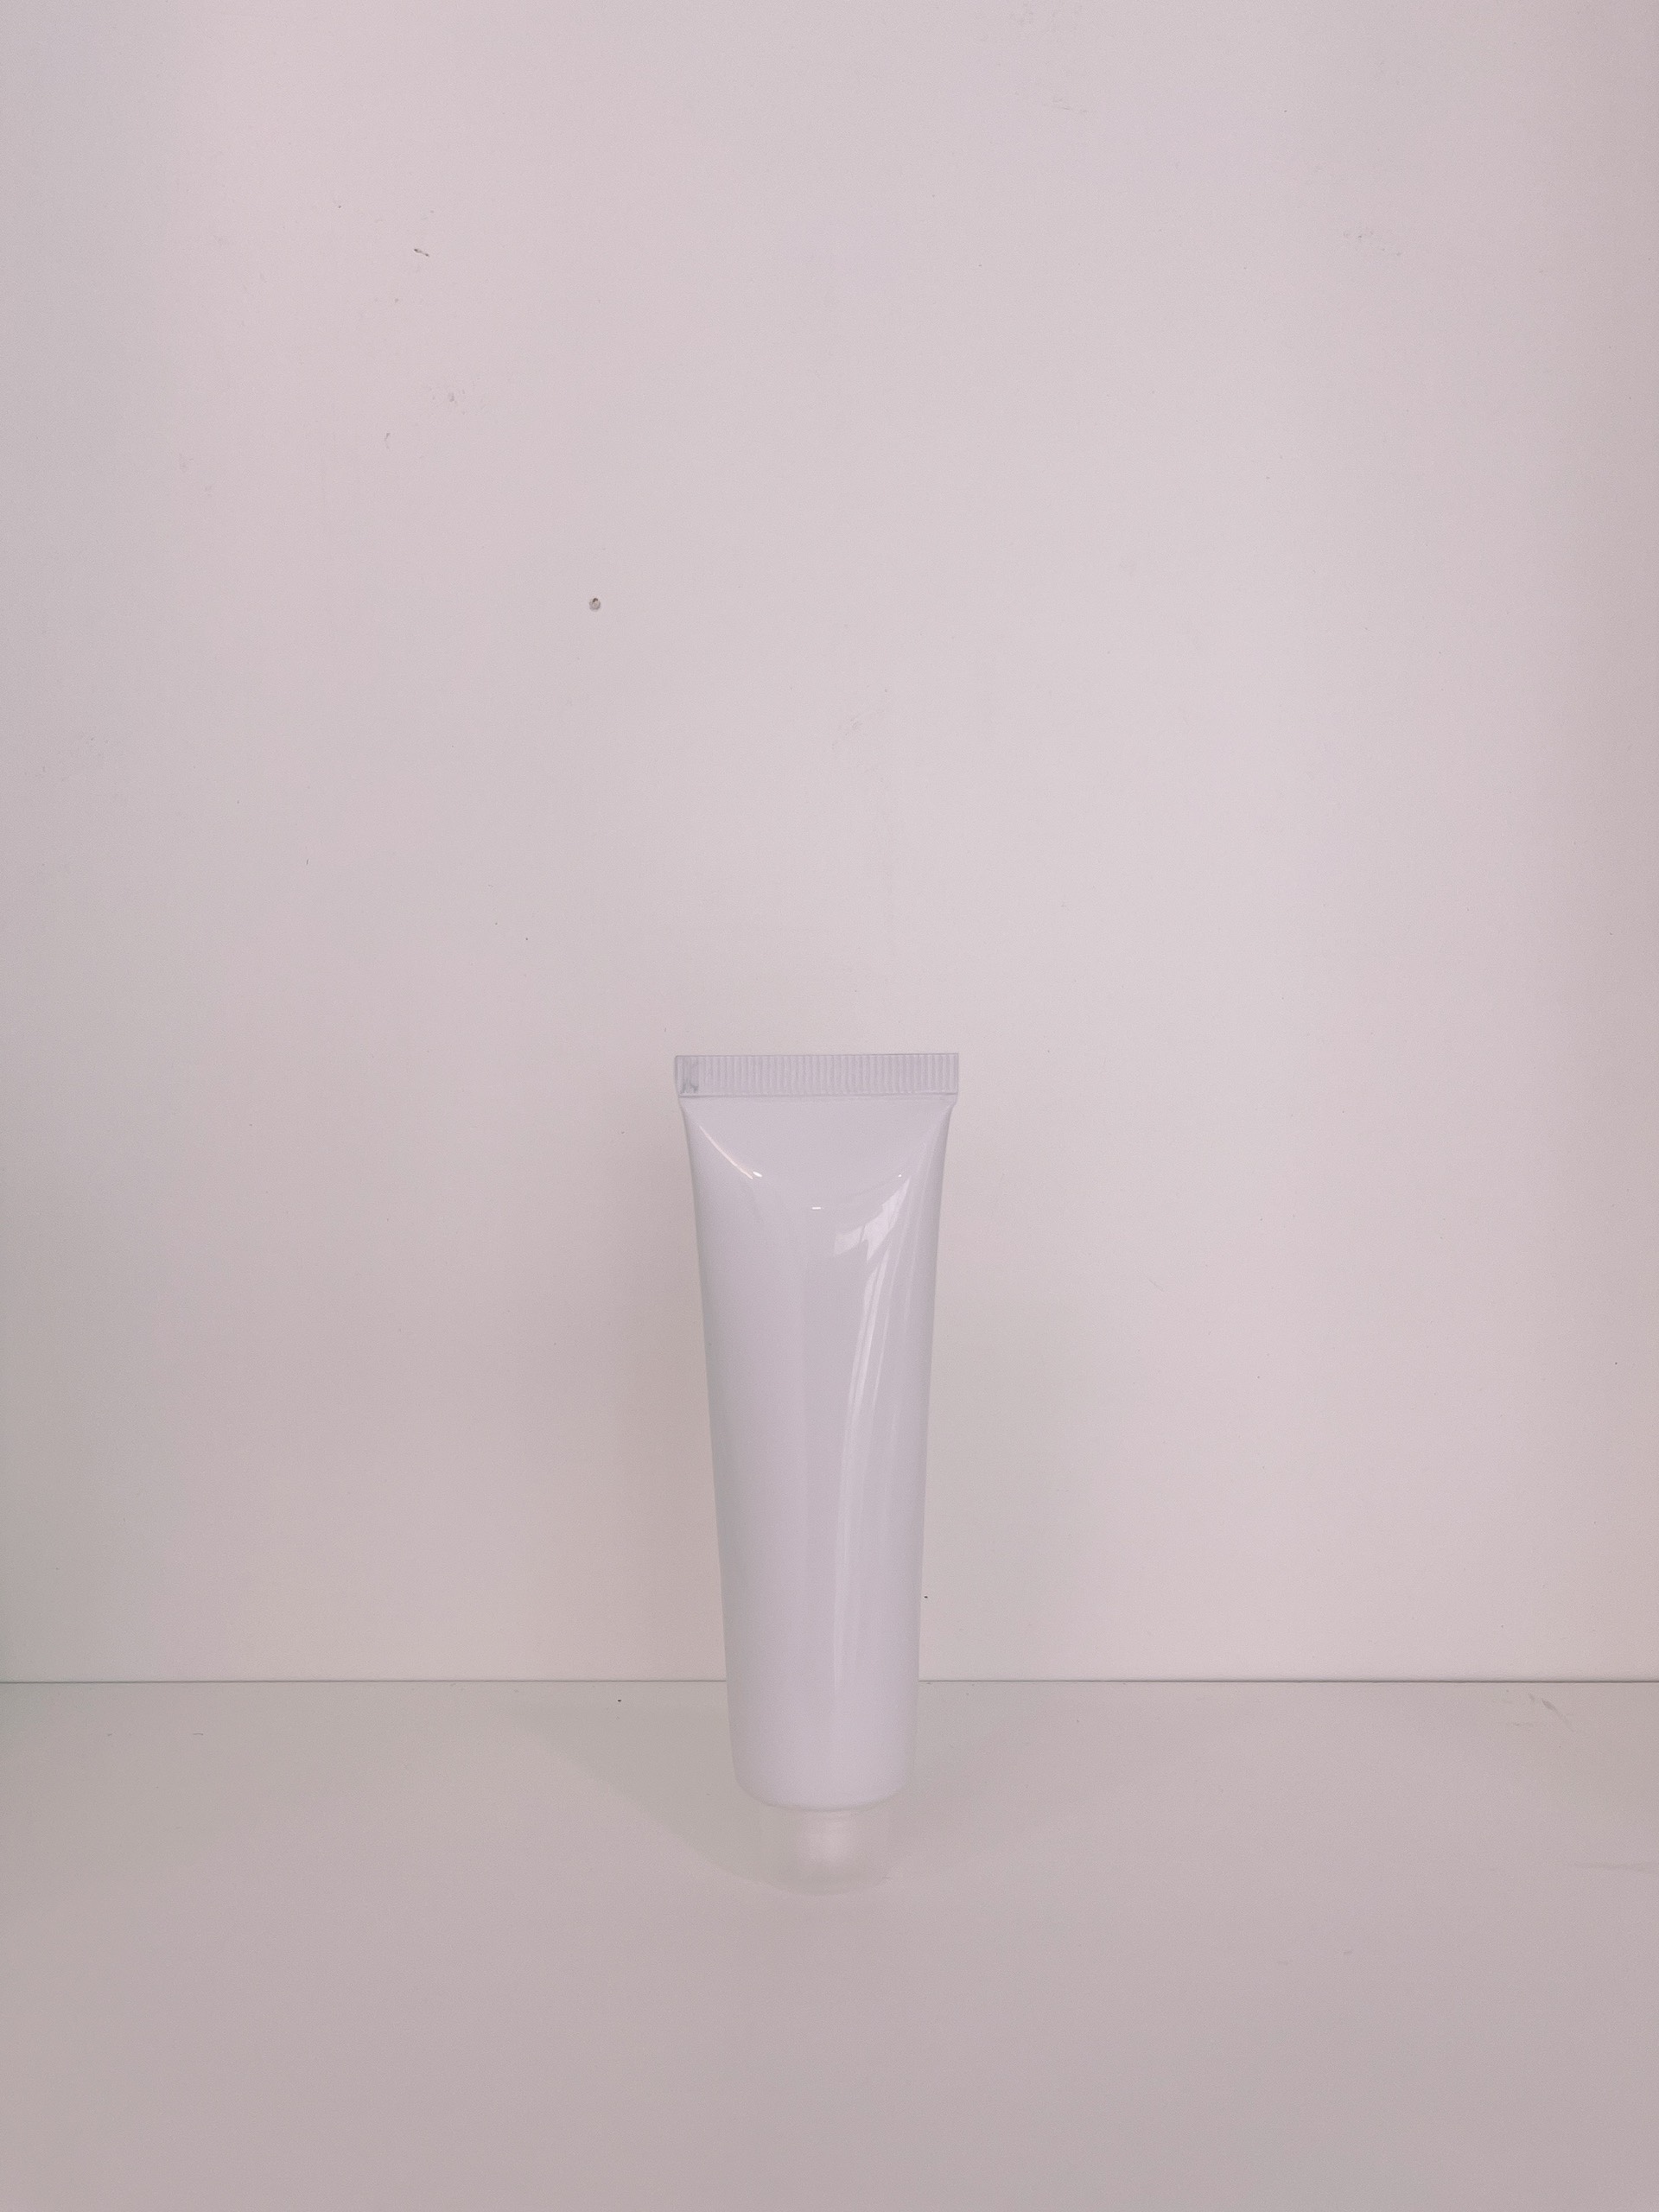 Tuýp nhựa nền trắng ❤ ❤ Tuýp nhựa (tubes) chiết mỹ phẩm